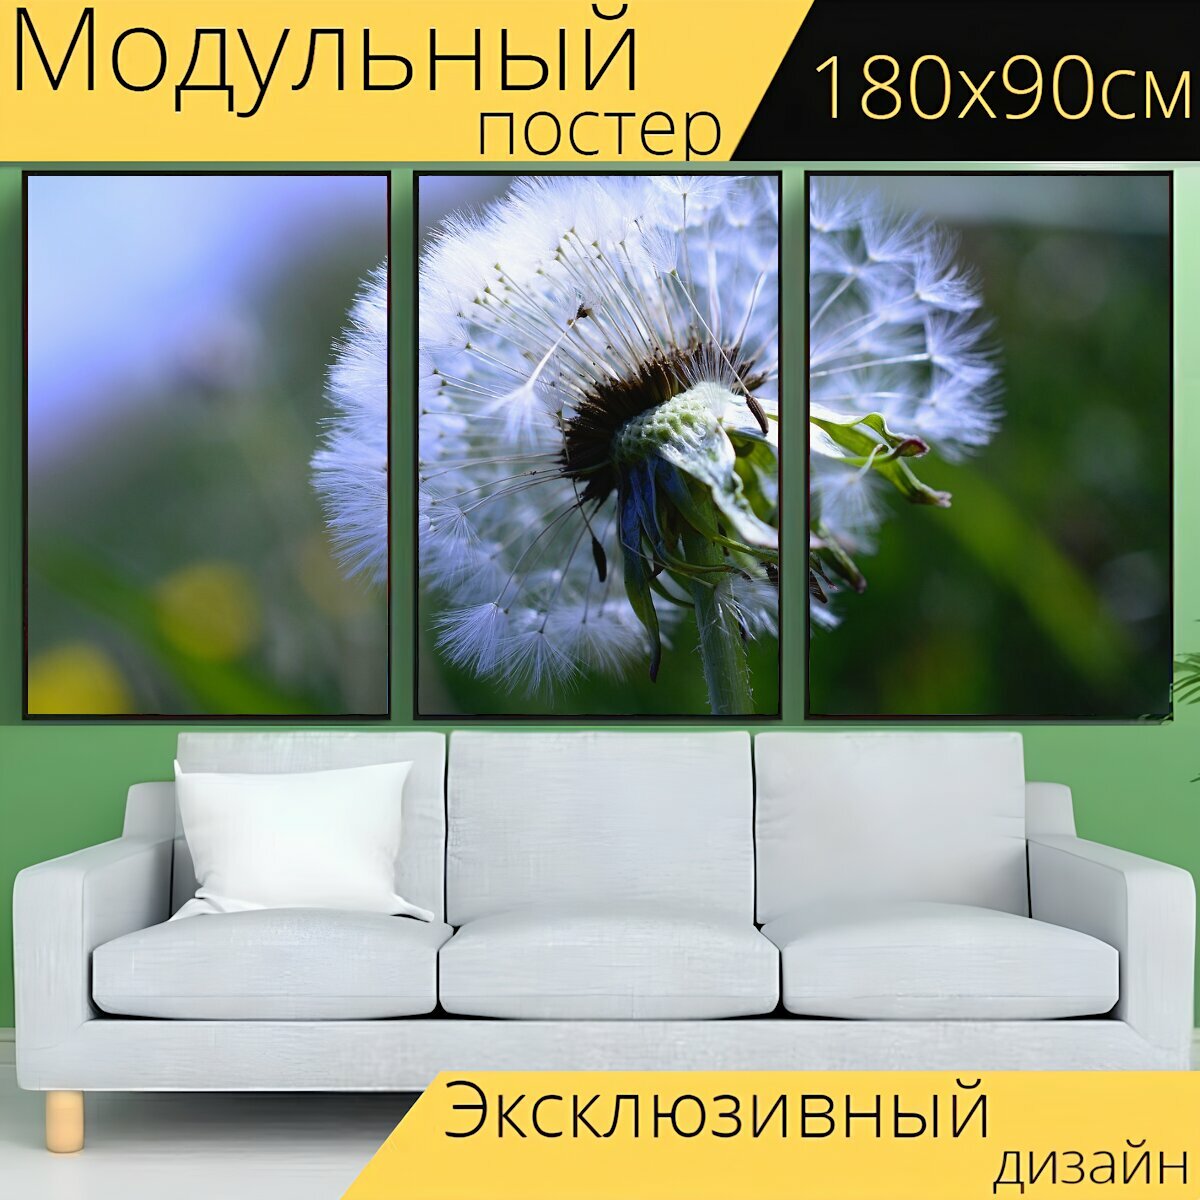 Модульный постер "Одуванчик, одуванчик цветок, семена" 180 x 90 см. для интерьера